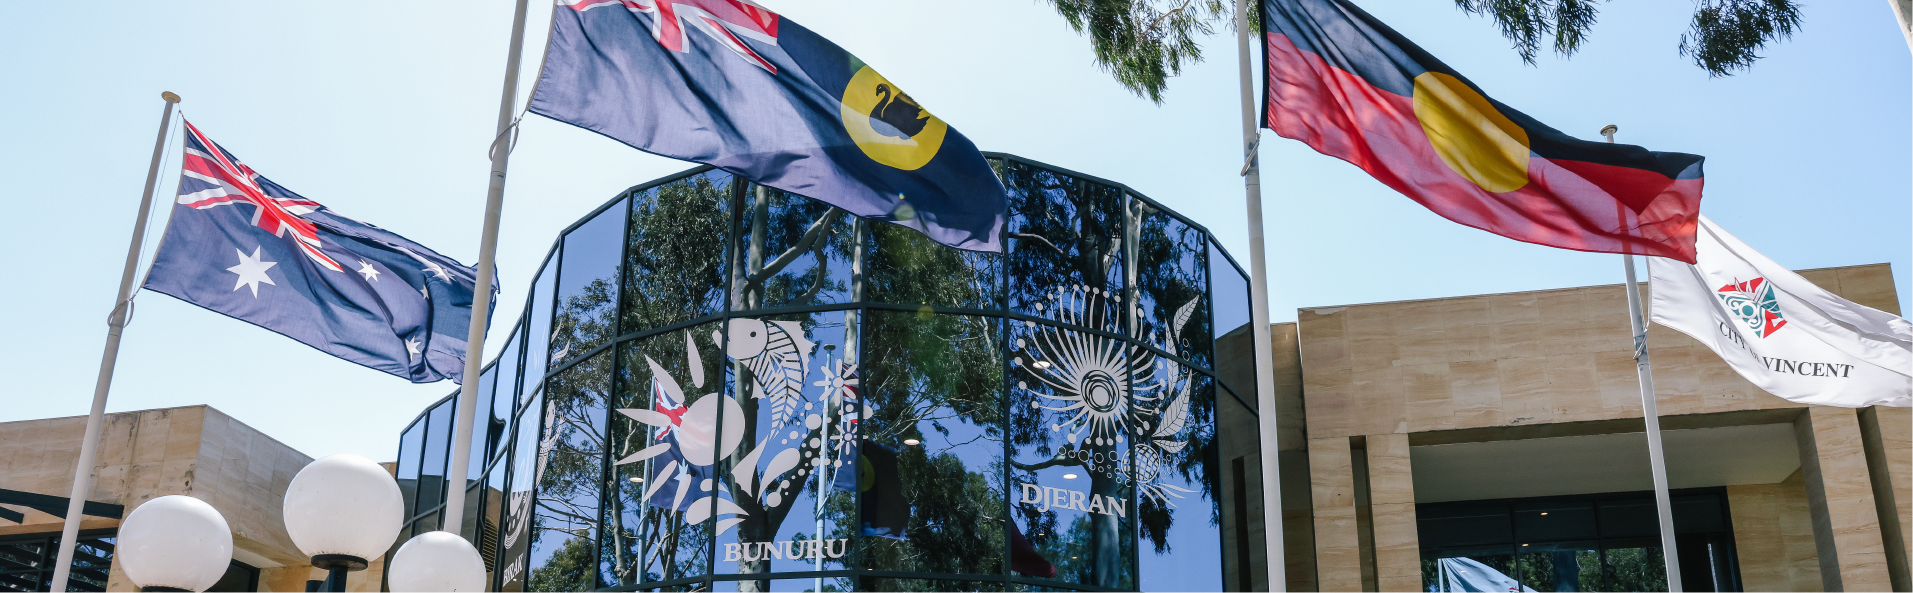 Banner - Aboriginal Culture - Noongar Culture » City of Vincent